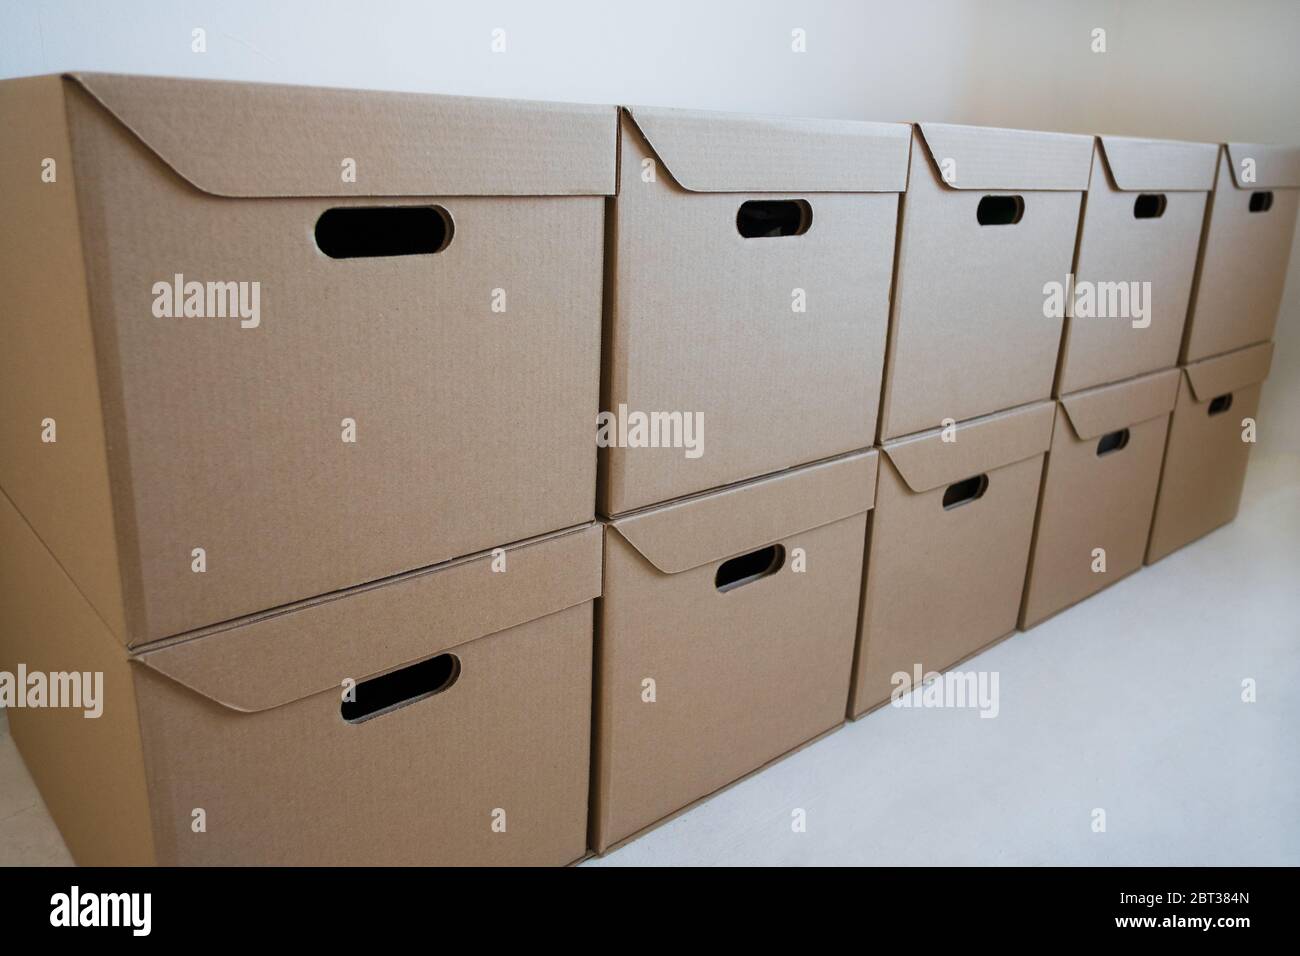 Gros plan - boîtes en carton pour le stockage qui sont bien empilées contre un mur blanc. Concept de livraison. Banque D'Images